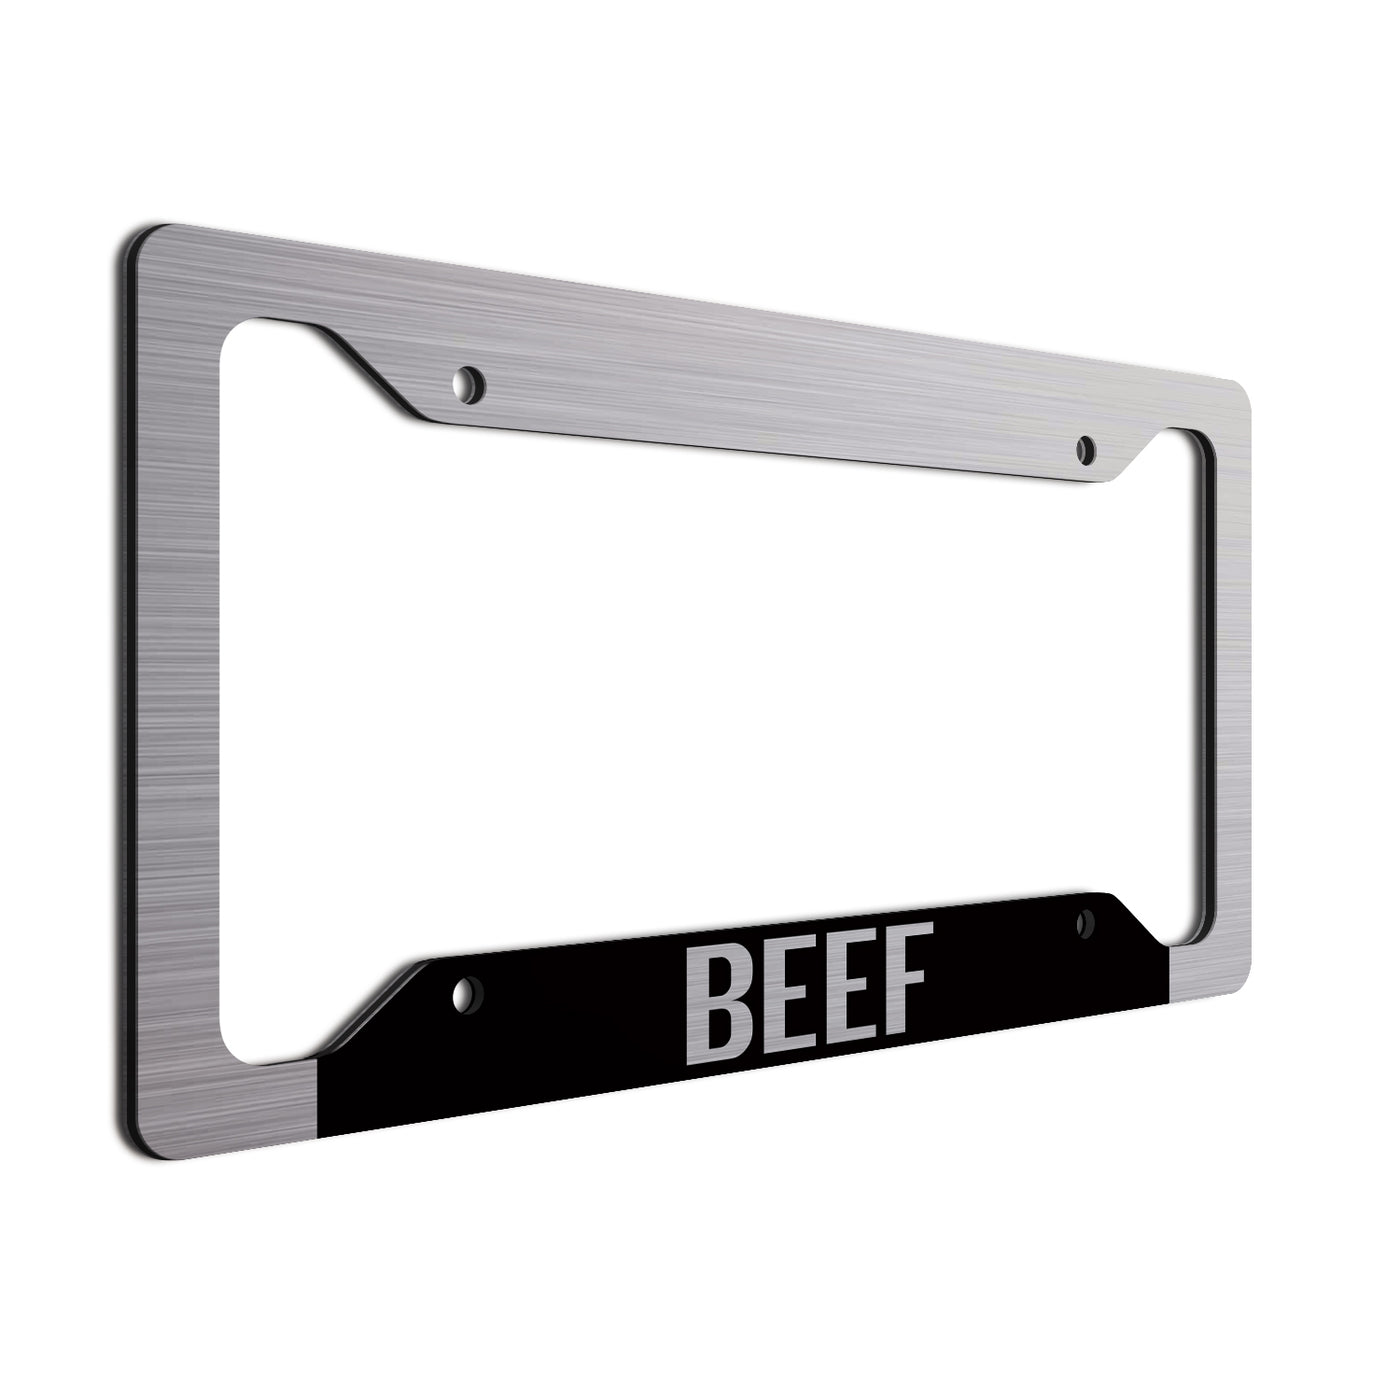 Beef License Plate Frame Black